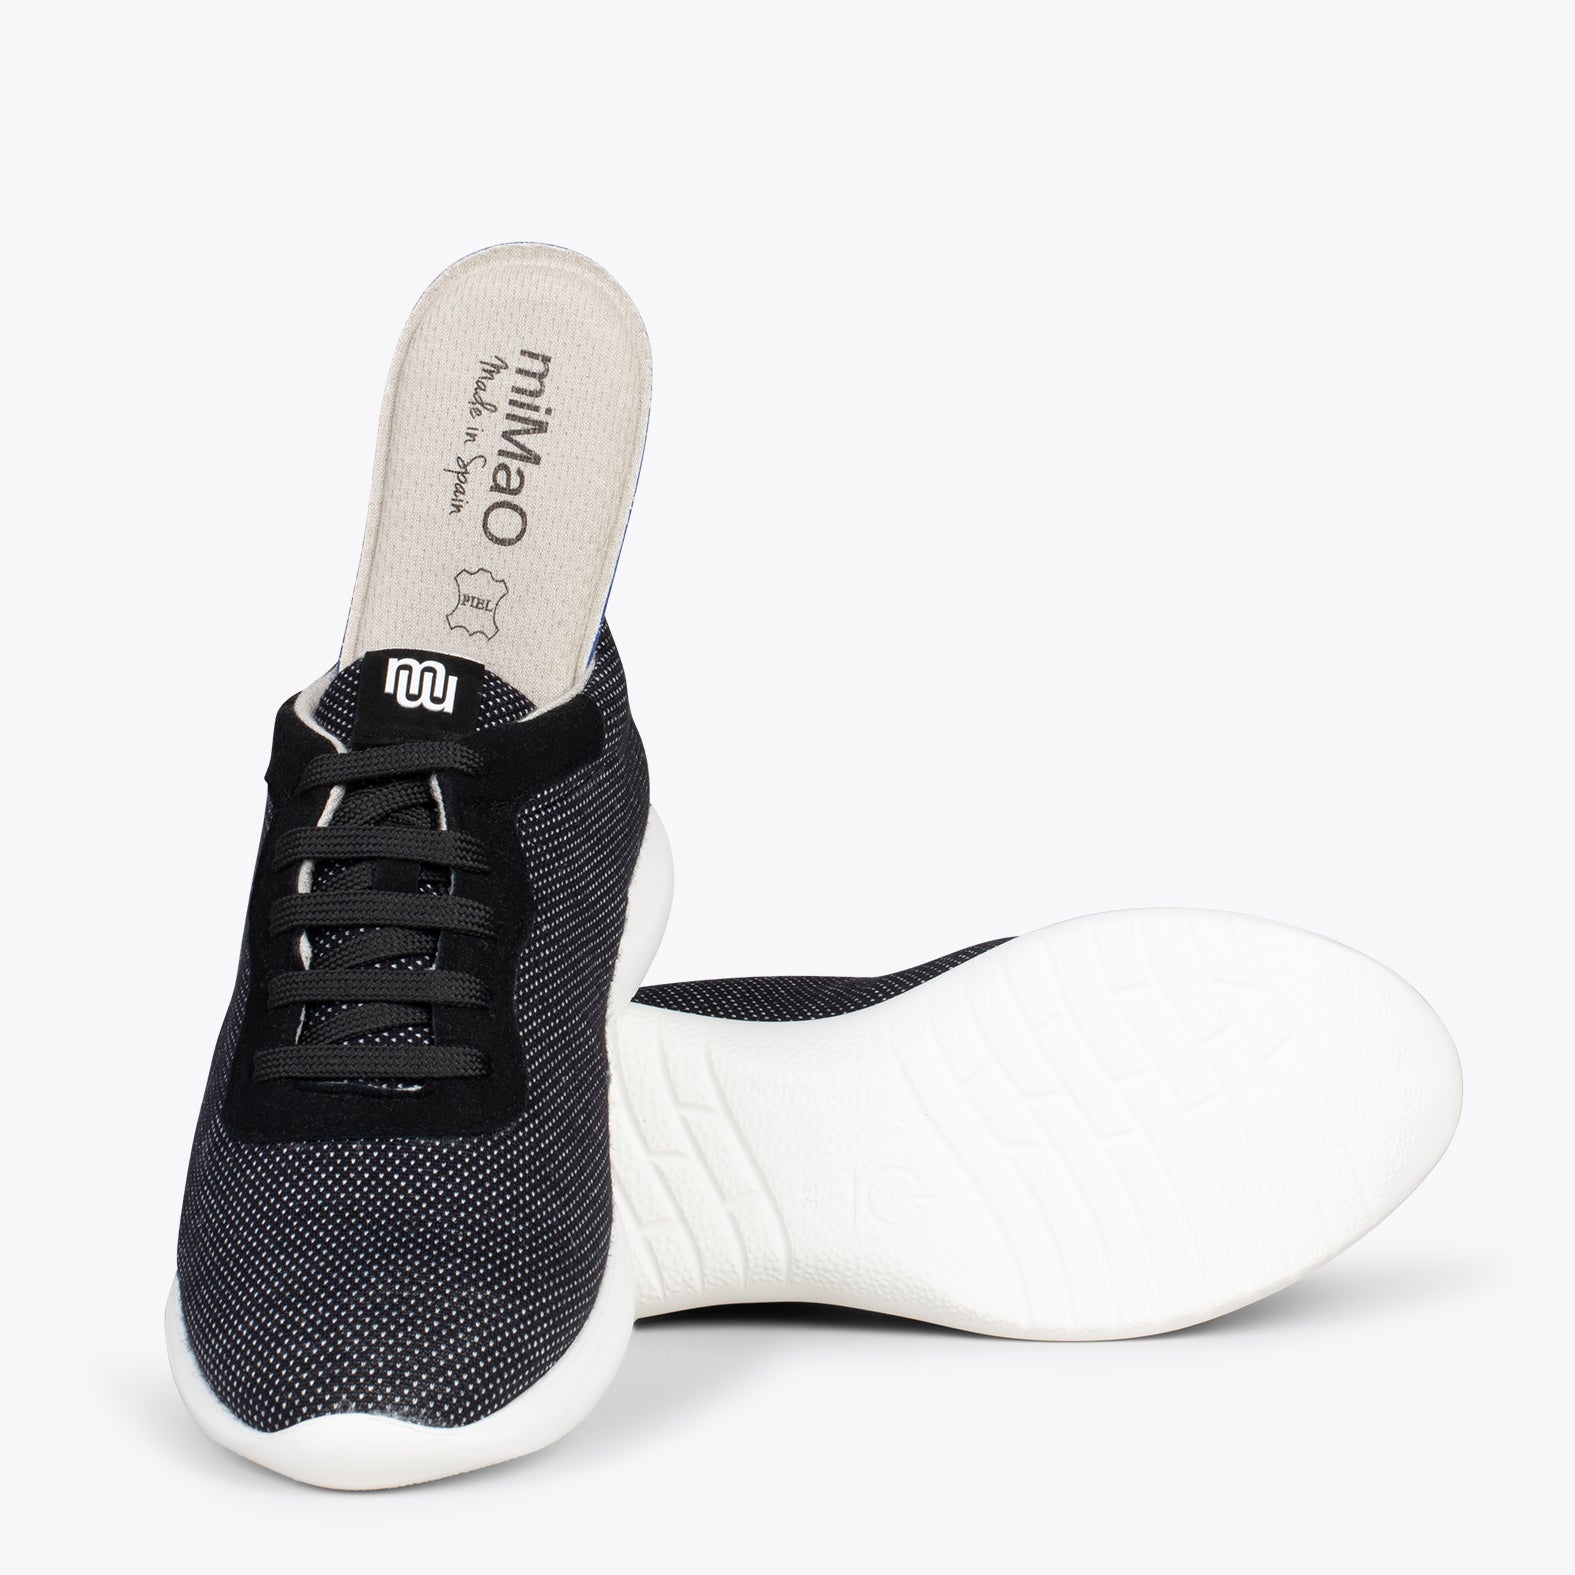 YOGA – BLACK sneakers crafted in merino wool